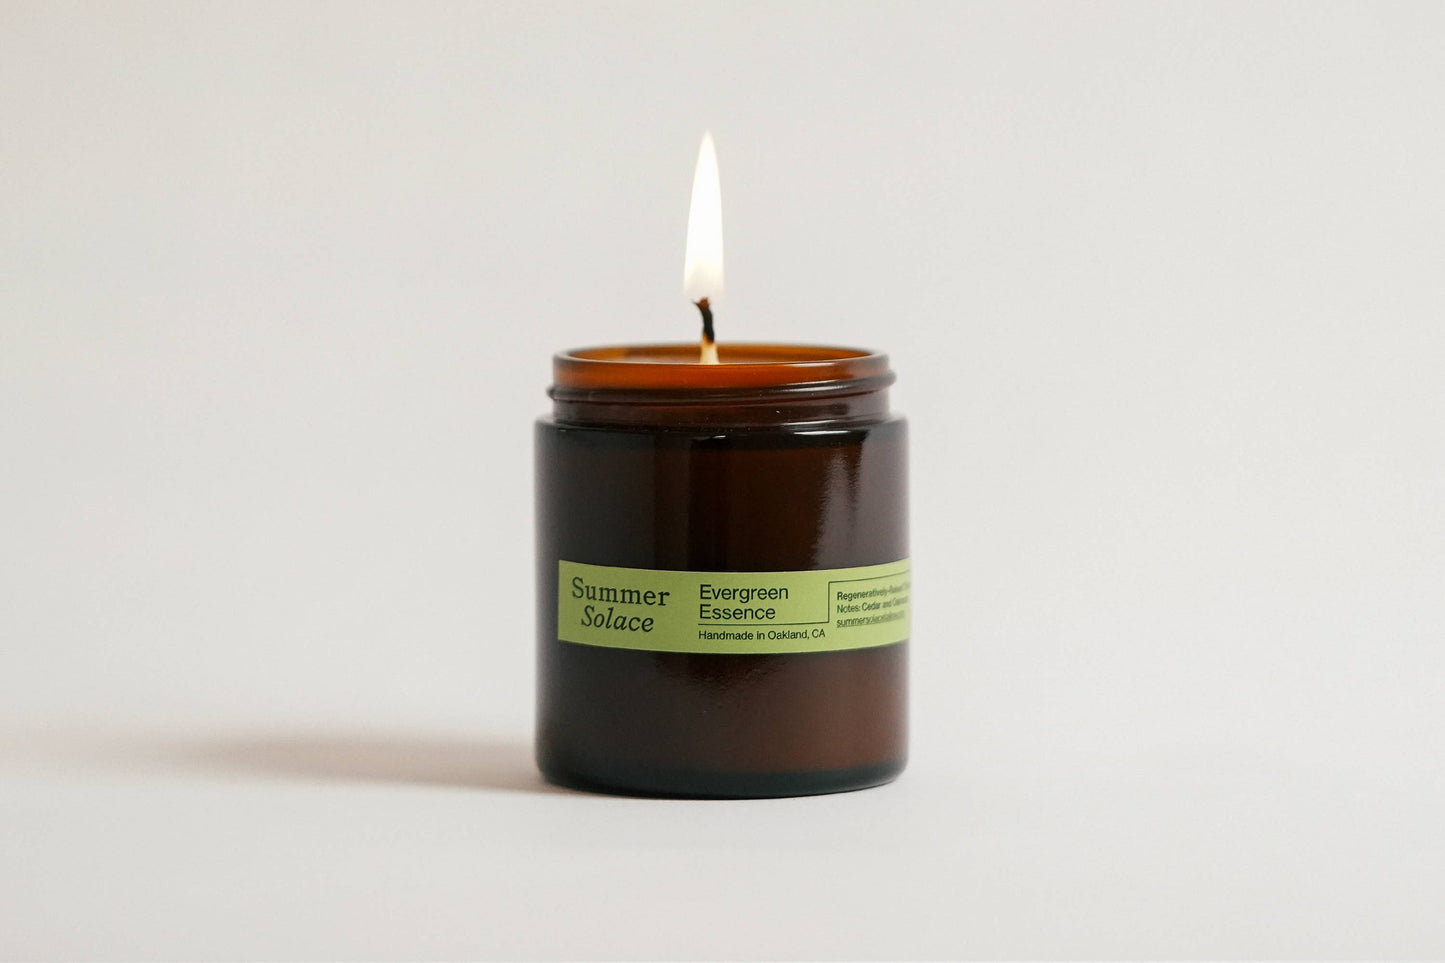 Evergreen Essence (Cedar and Oakmoss) Tallow Candle